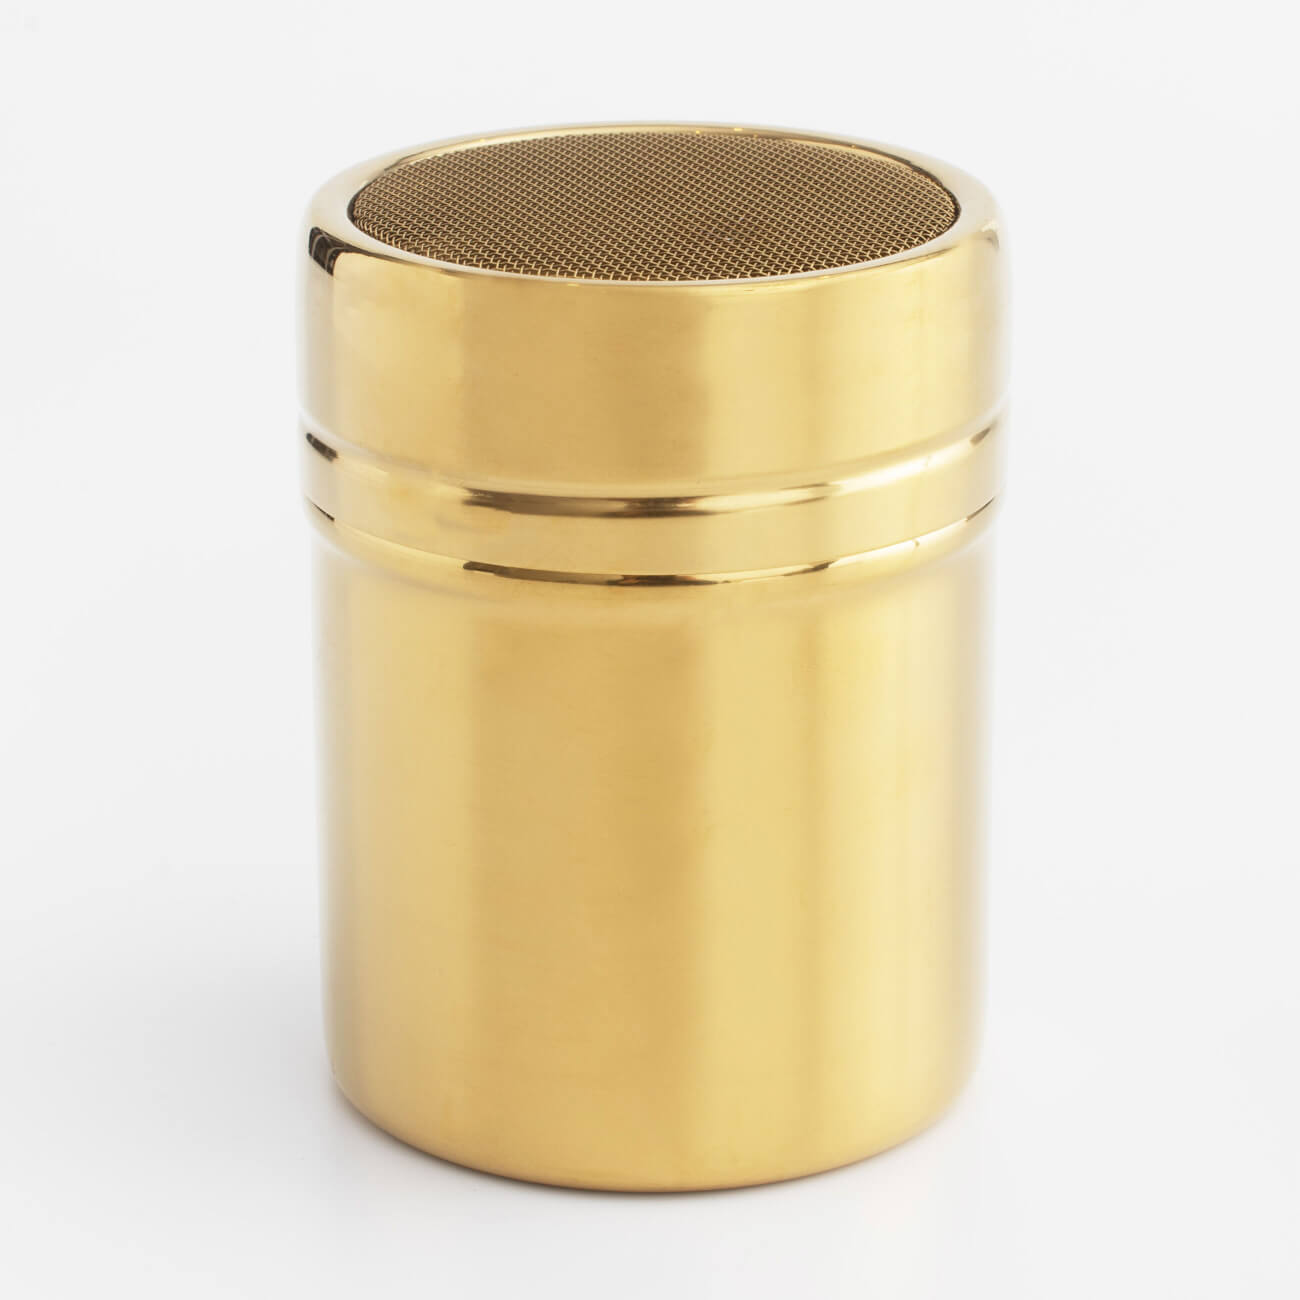 Сито-кружка, 9х7 см, с крышкой, сталь/пластик, золотистое, Classic gold сито для чая механическое vent цвет серебряный